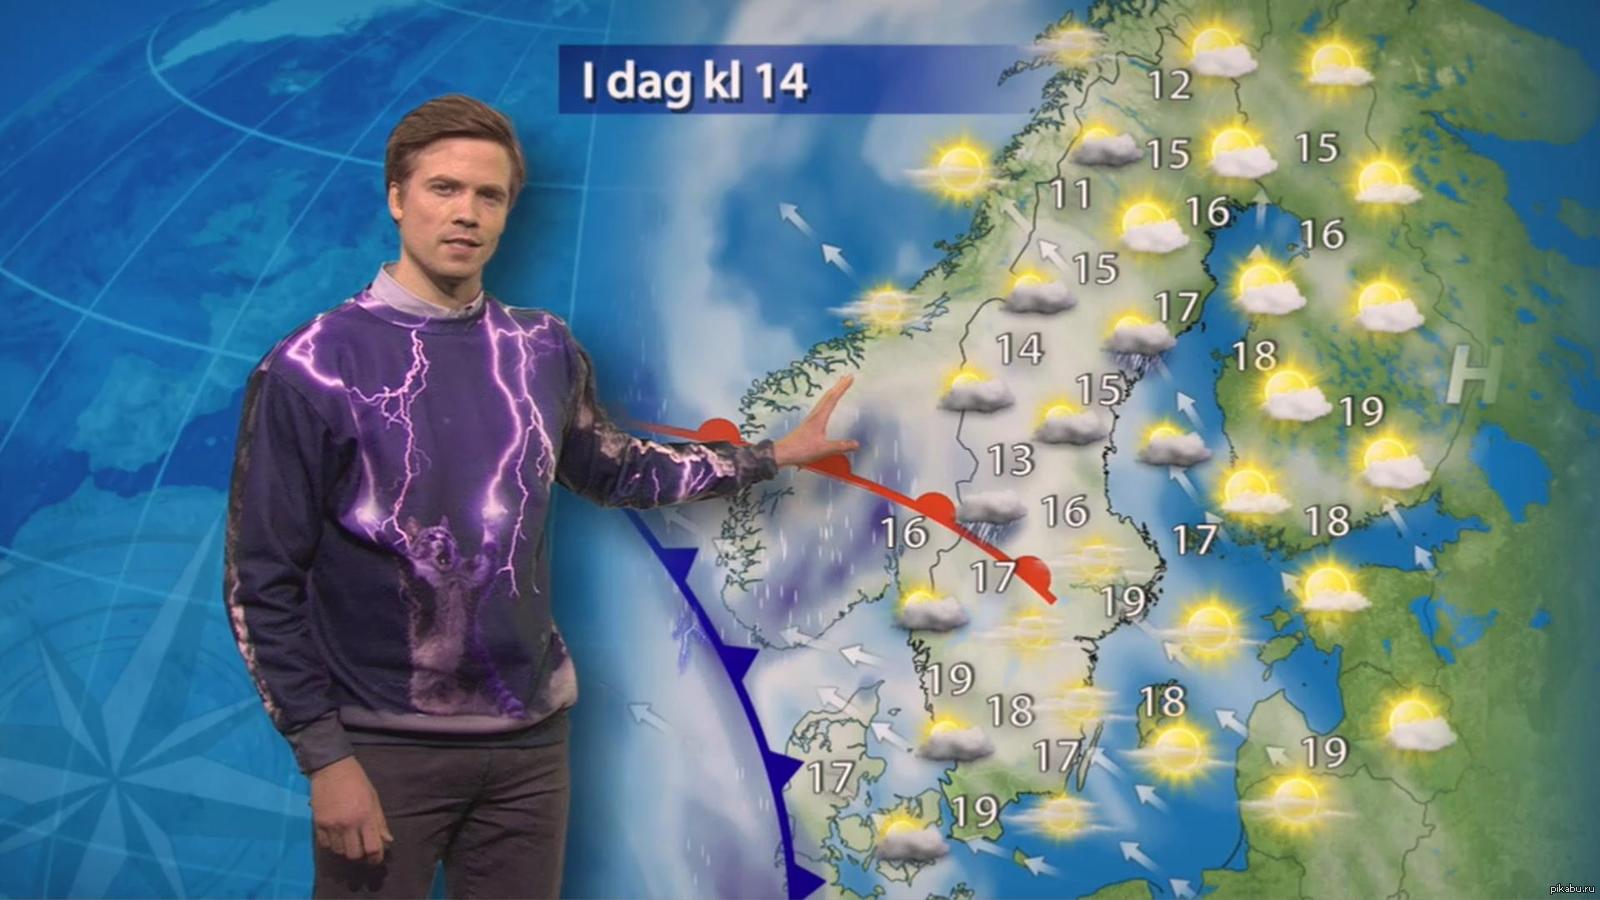 У шведского ведущего прогноза погоды классный свитер., Одежда, Ведущий, Тел...